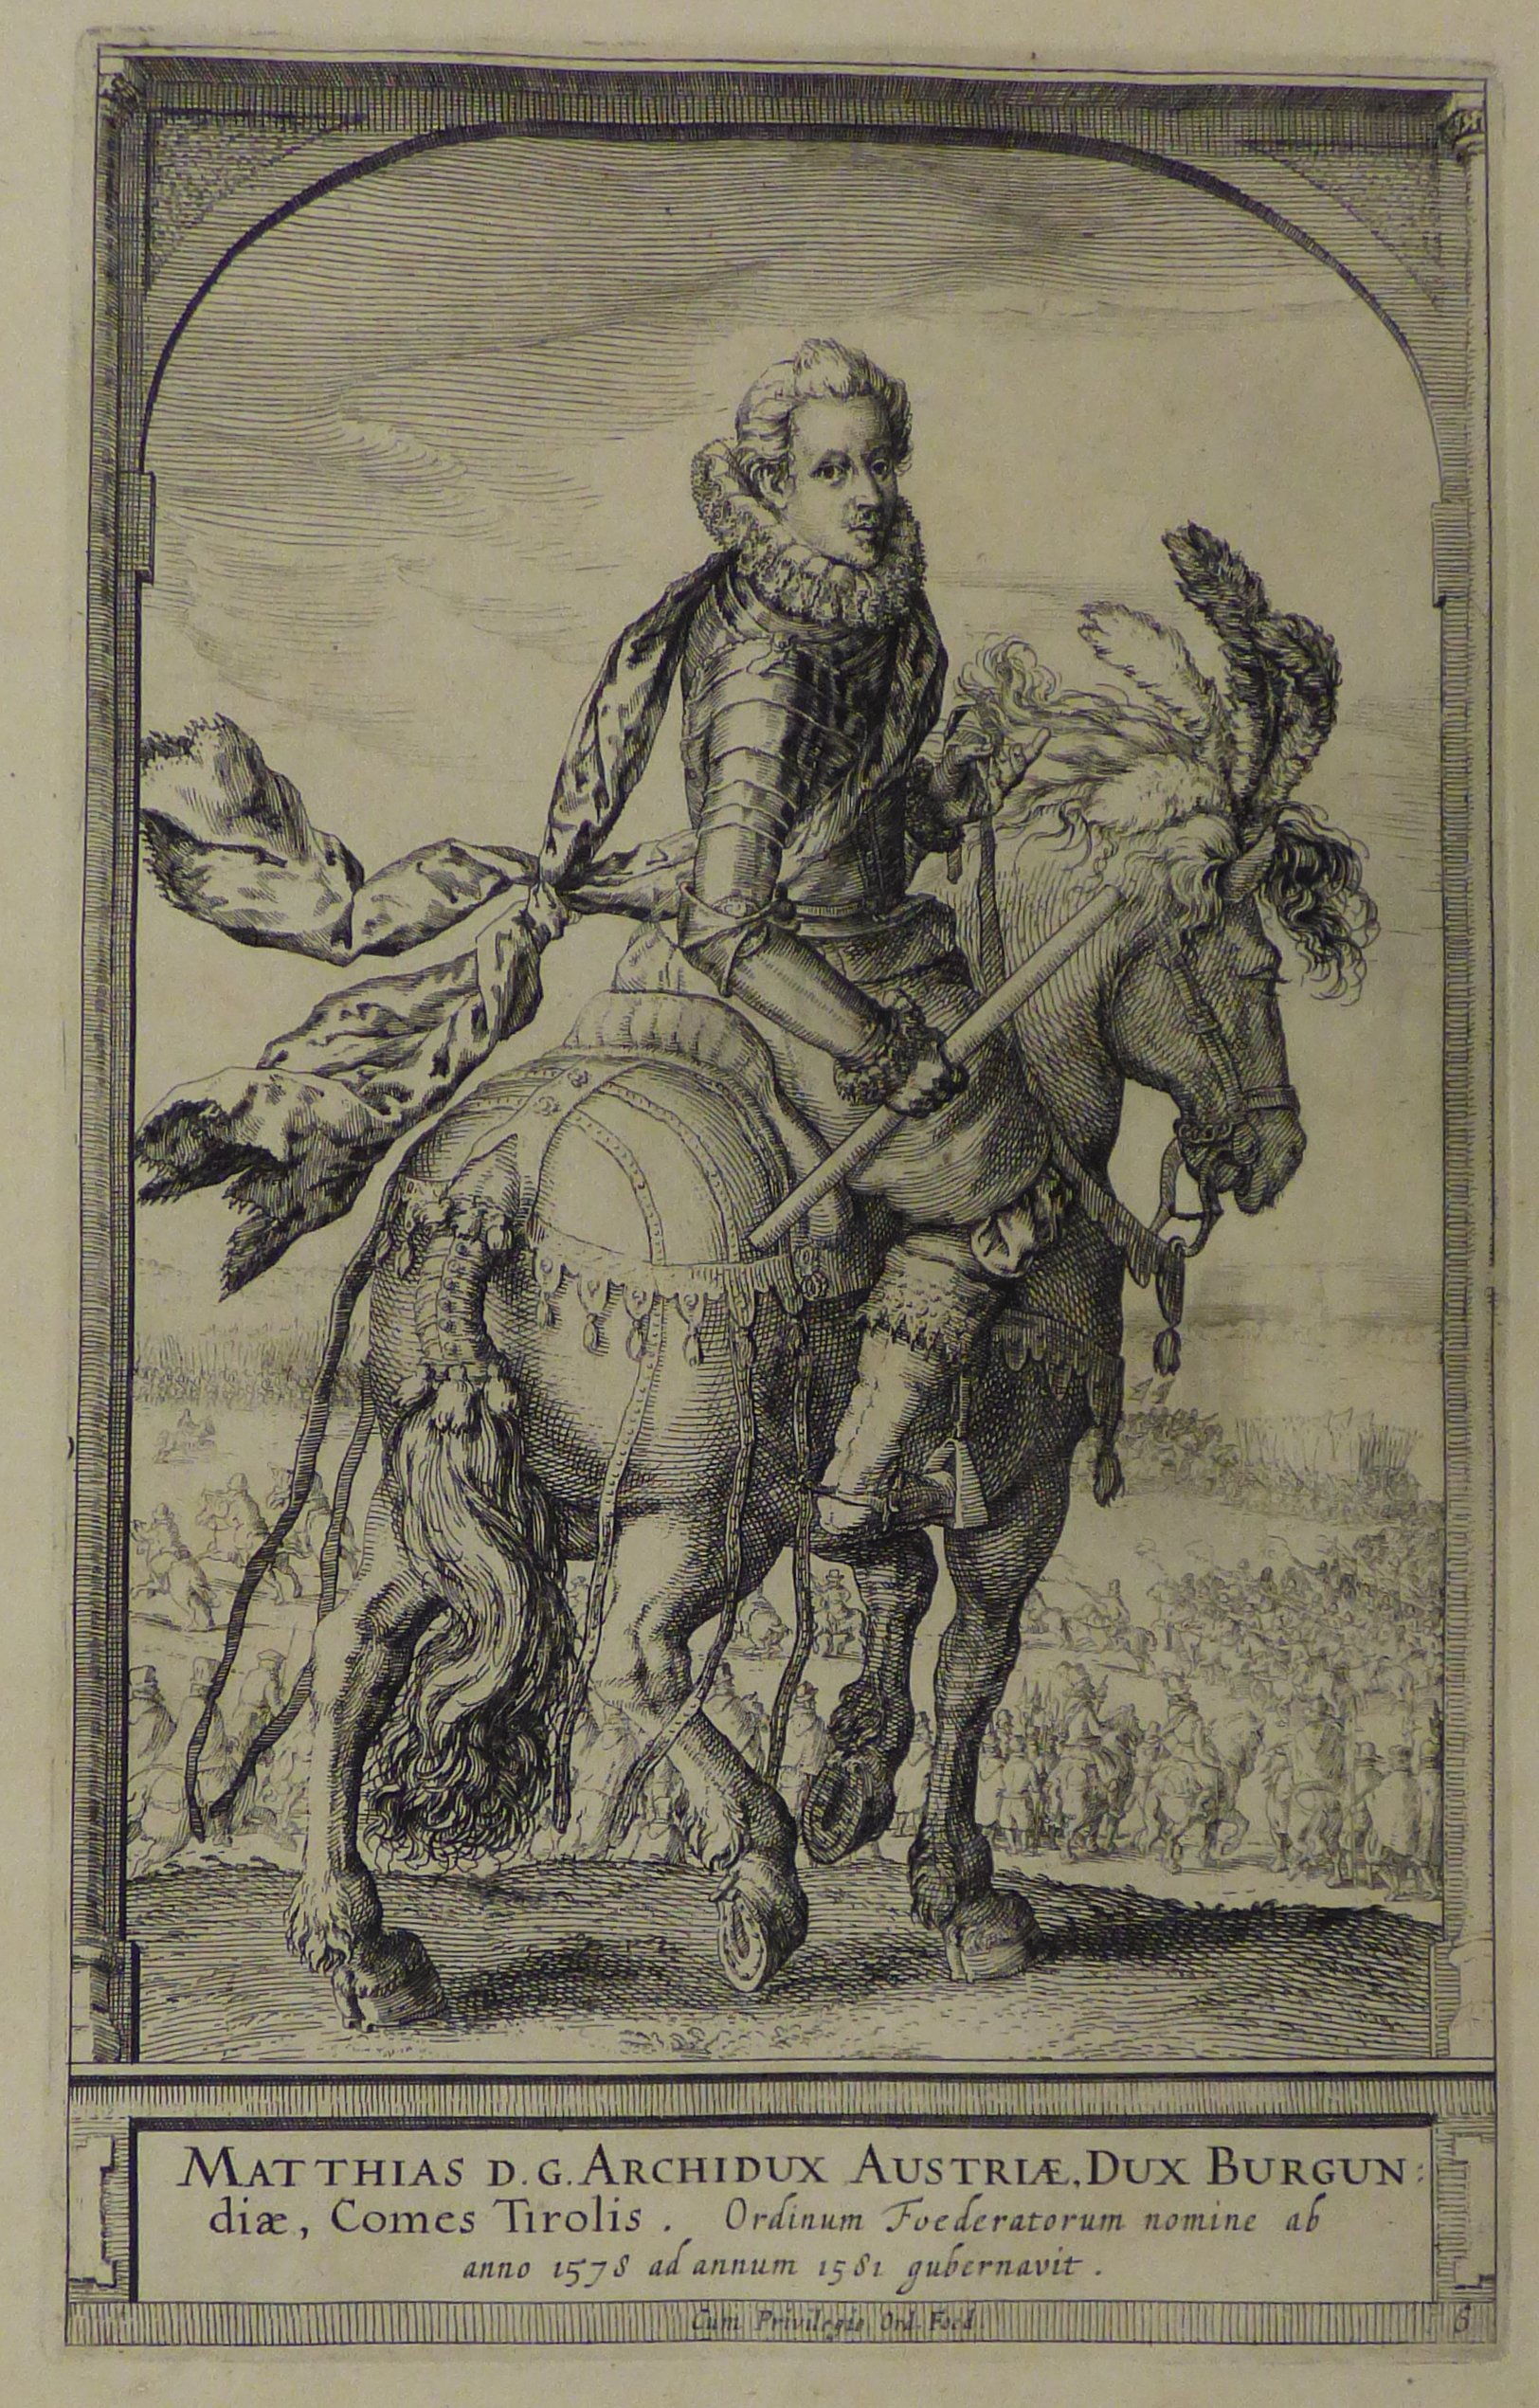 Matthias, späterer Kaiser, als Statthalter der Niederlande dargestellt, um 1620. (Städtisches Museum Schloss Rheydt CC BY)